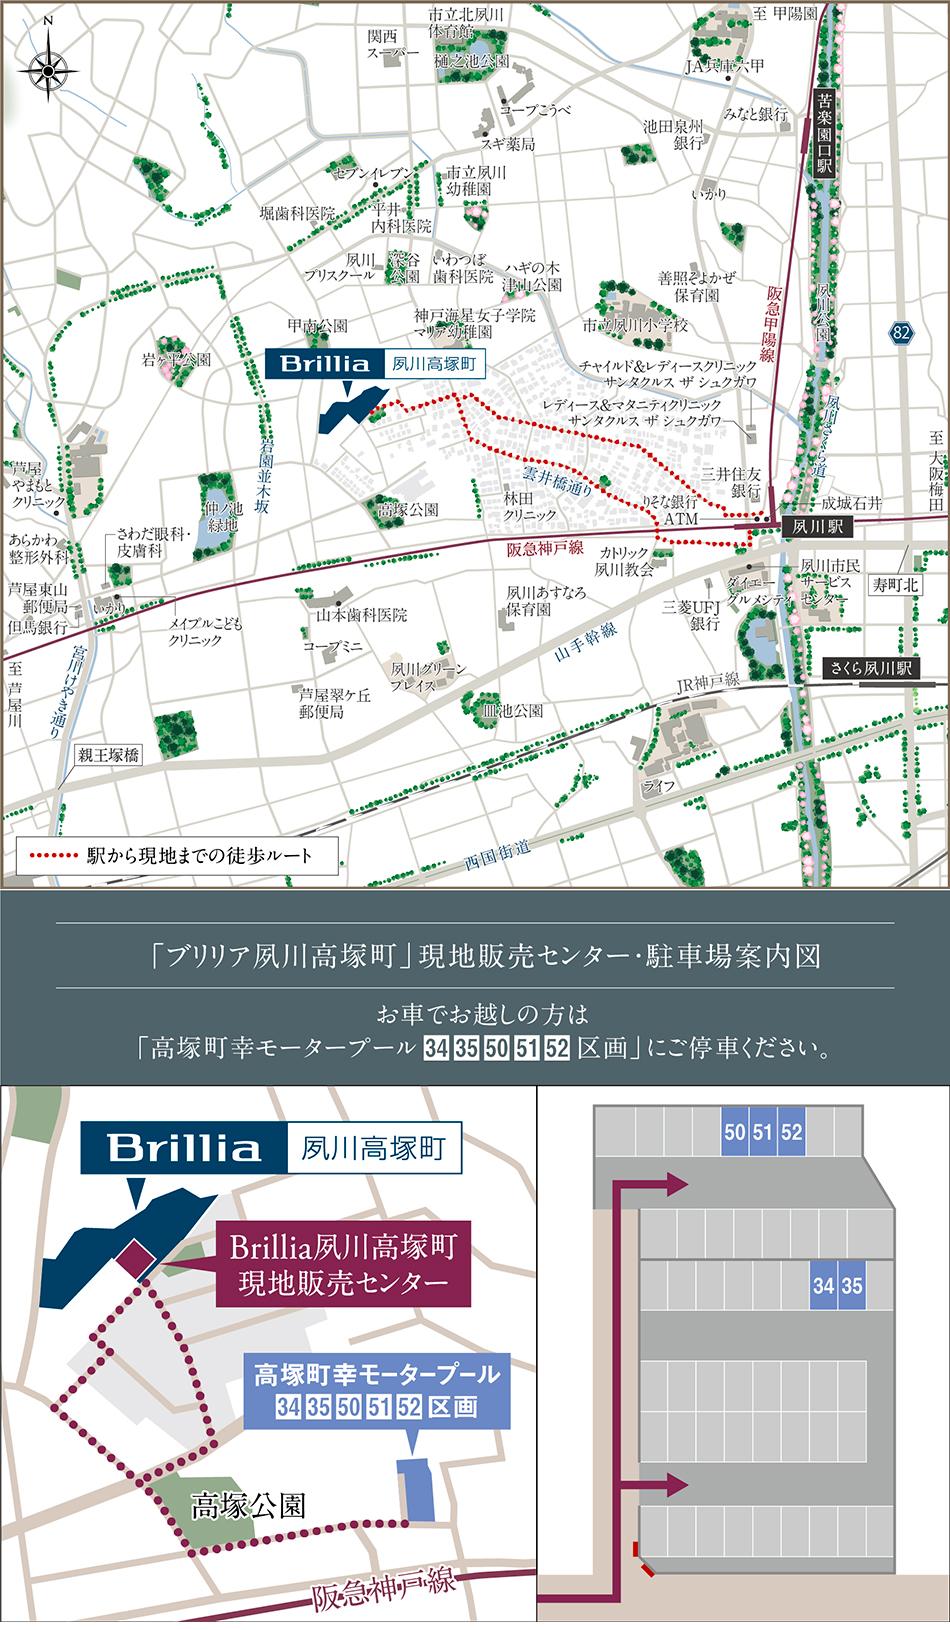 Brillia(ブリリア) 夙川高塚町のモデルルーム案内図